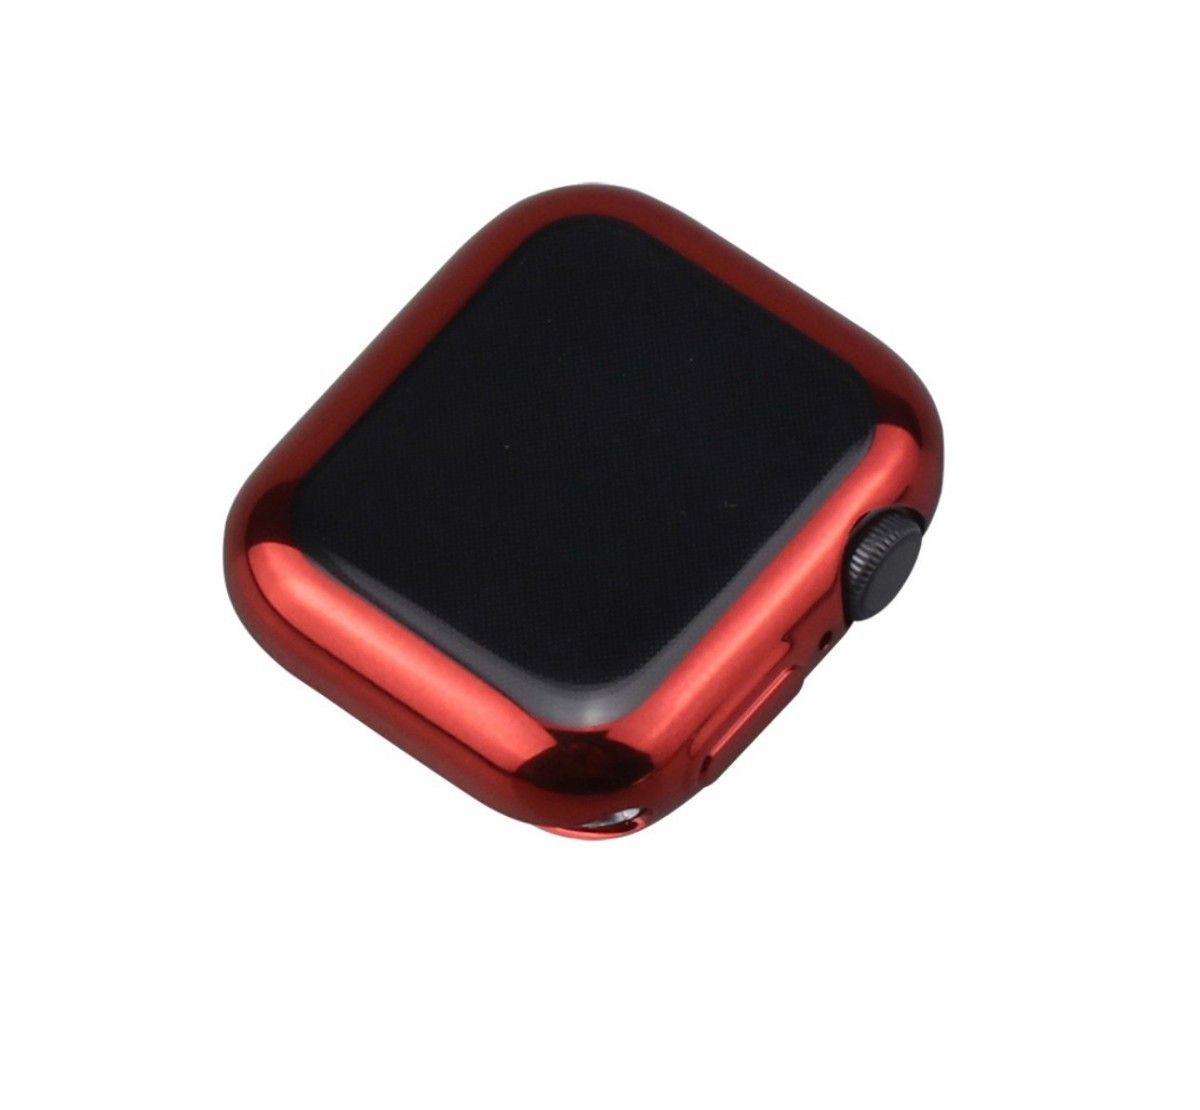 ★在庫セール5/29まで★最新機種対応★ Apple Watch 41㎜ ブルー 表面側面カバー アップルウォッチ ケース 青